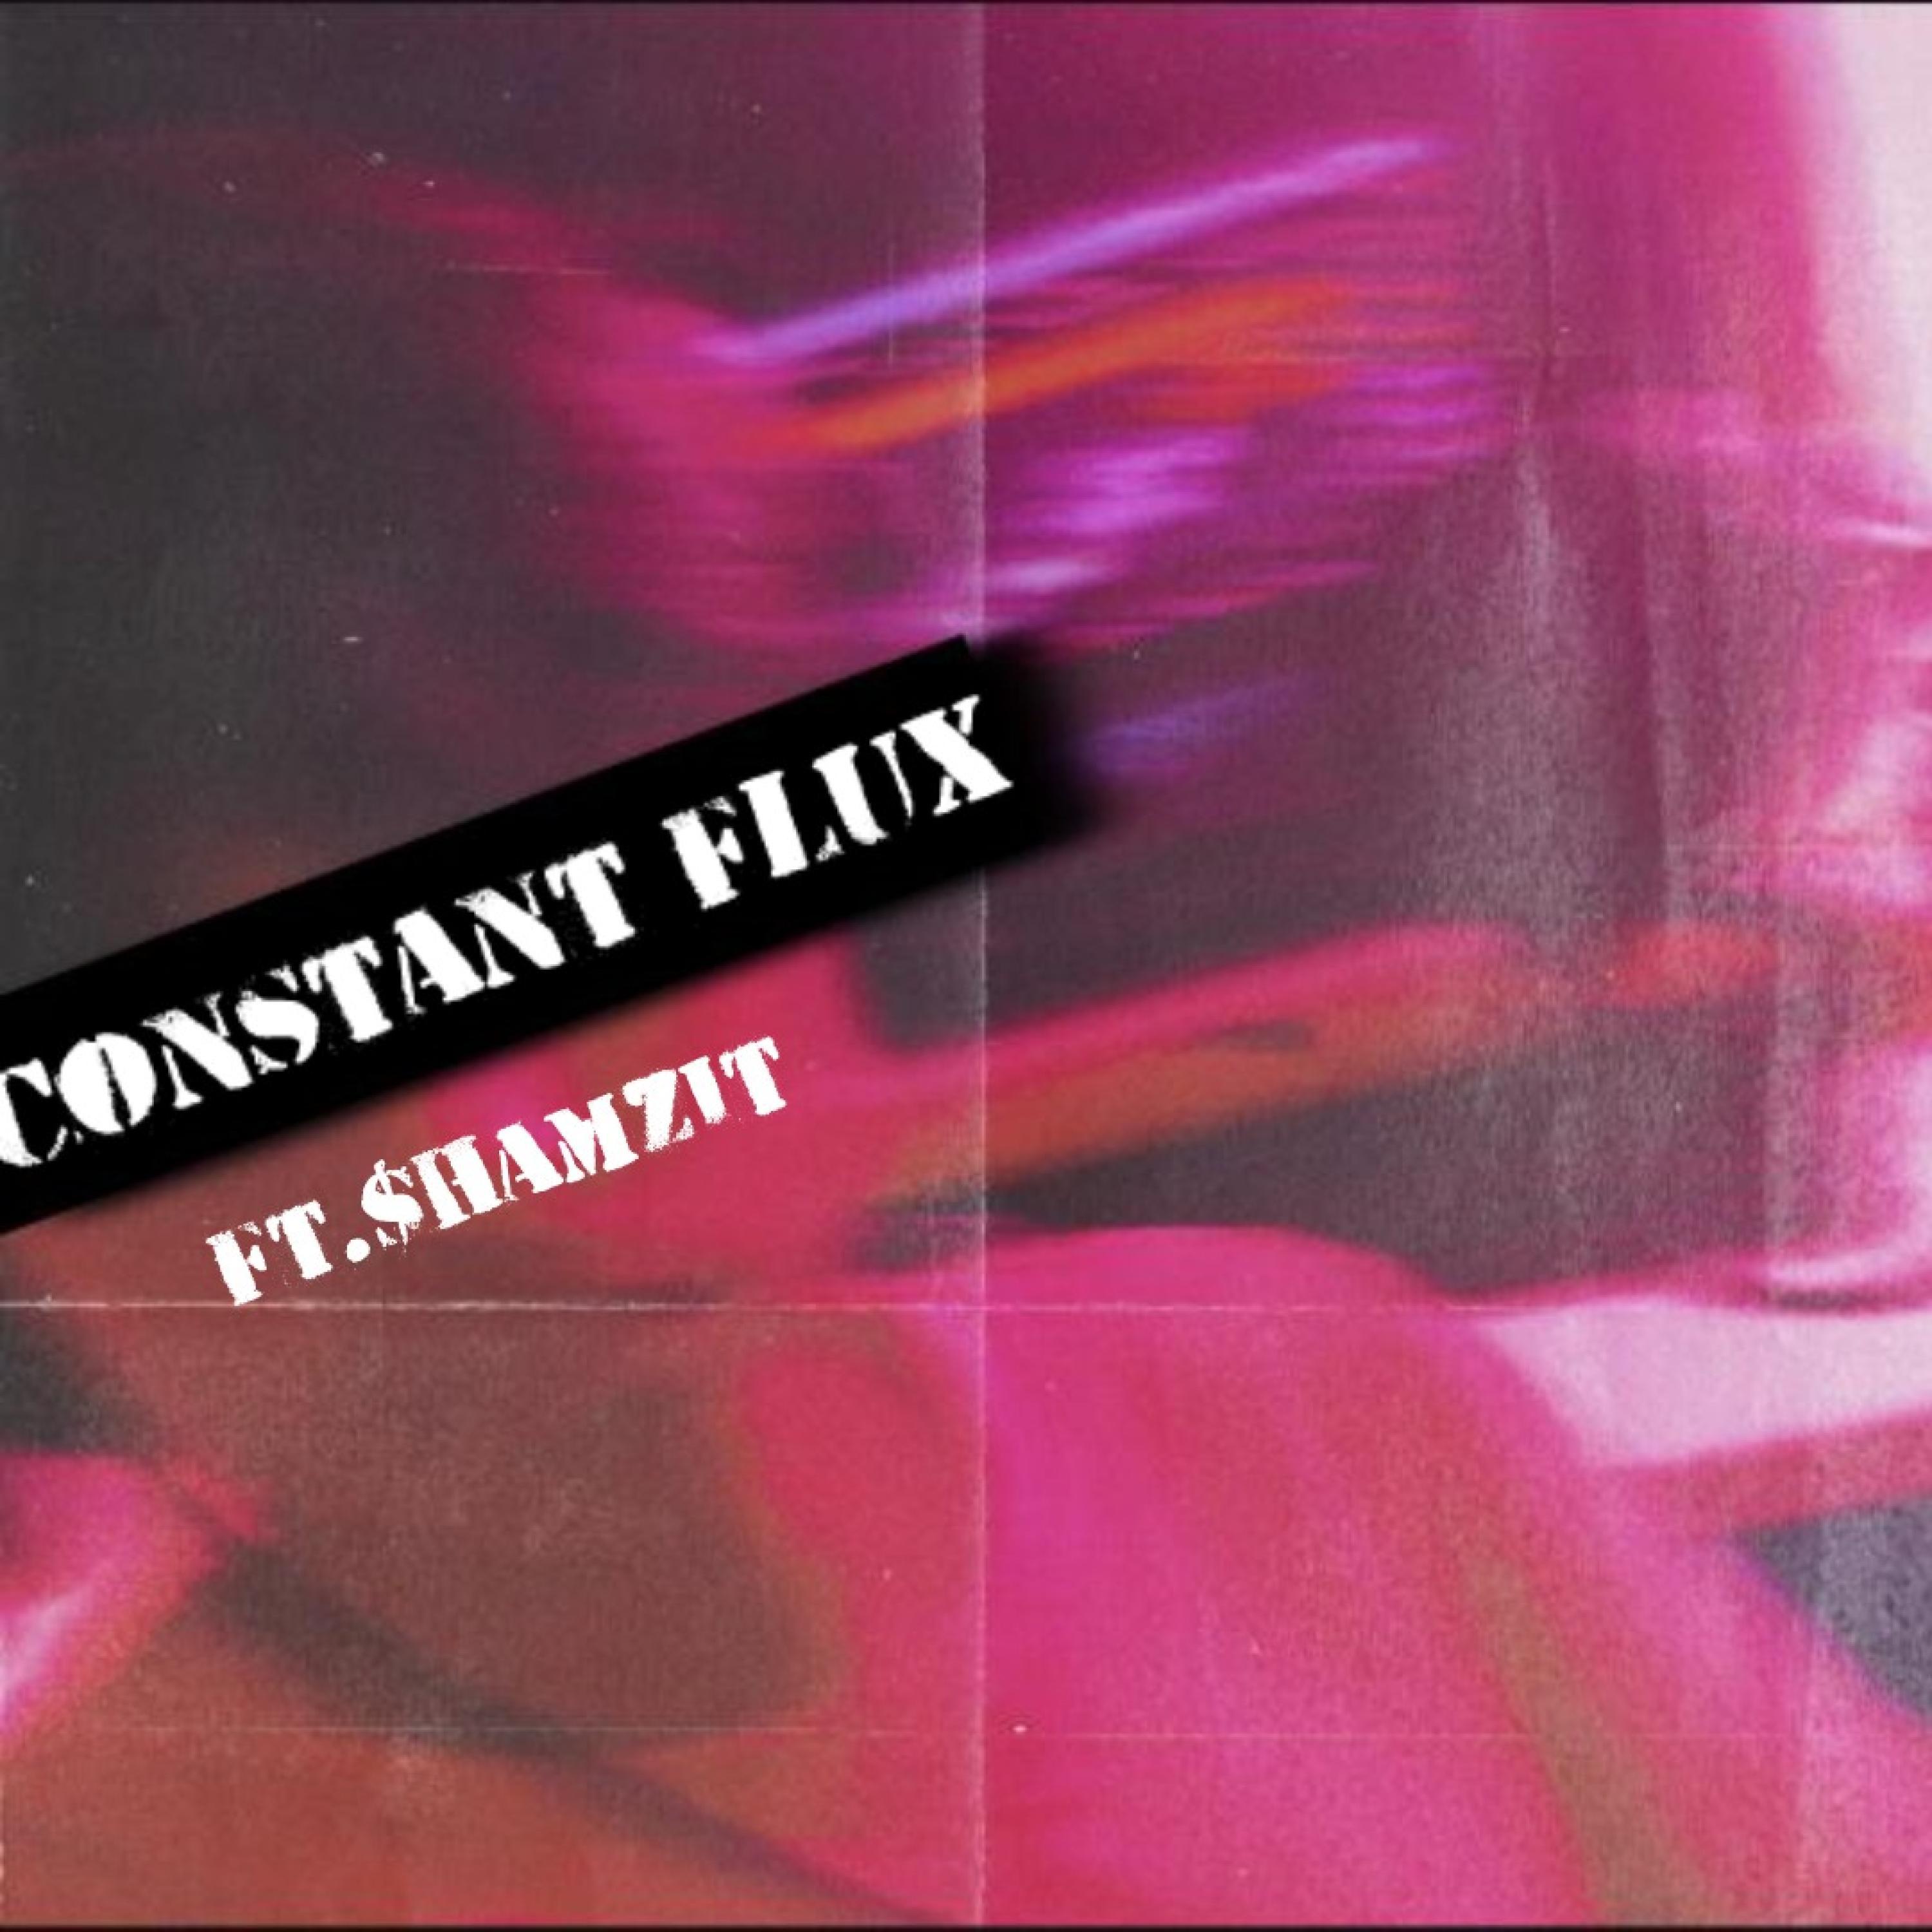 TheGodlyPeachMilk - Constant Flux (feat. $hamZit & prodozne!)